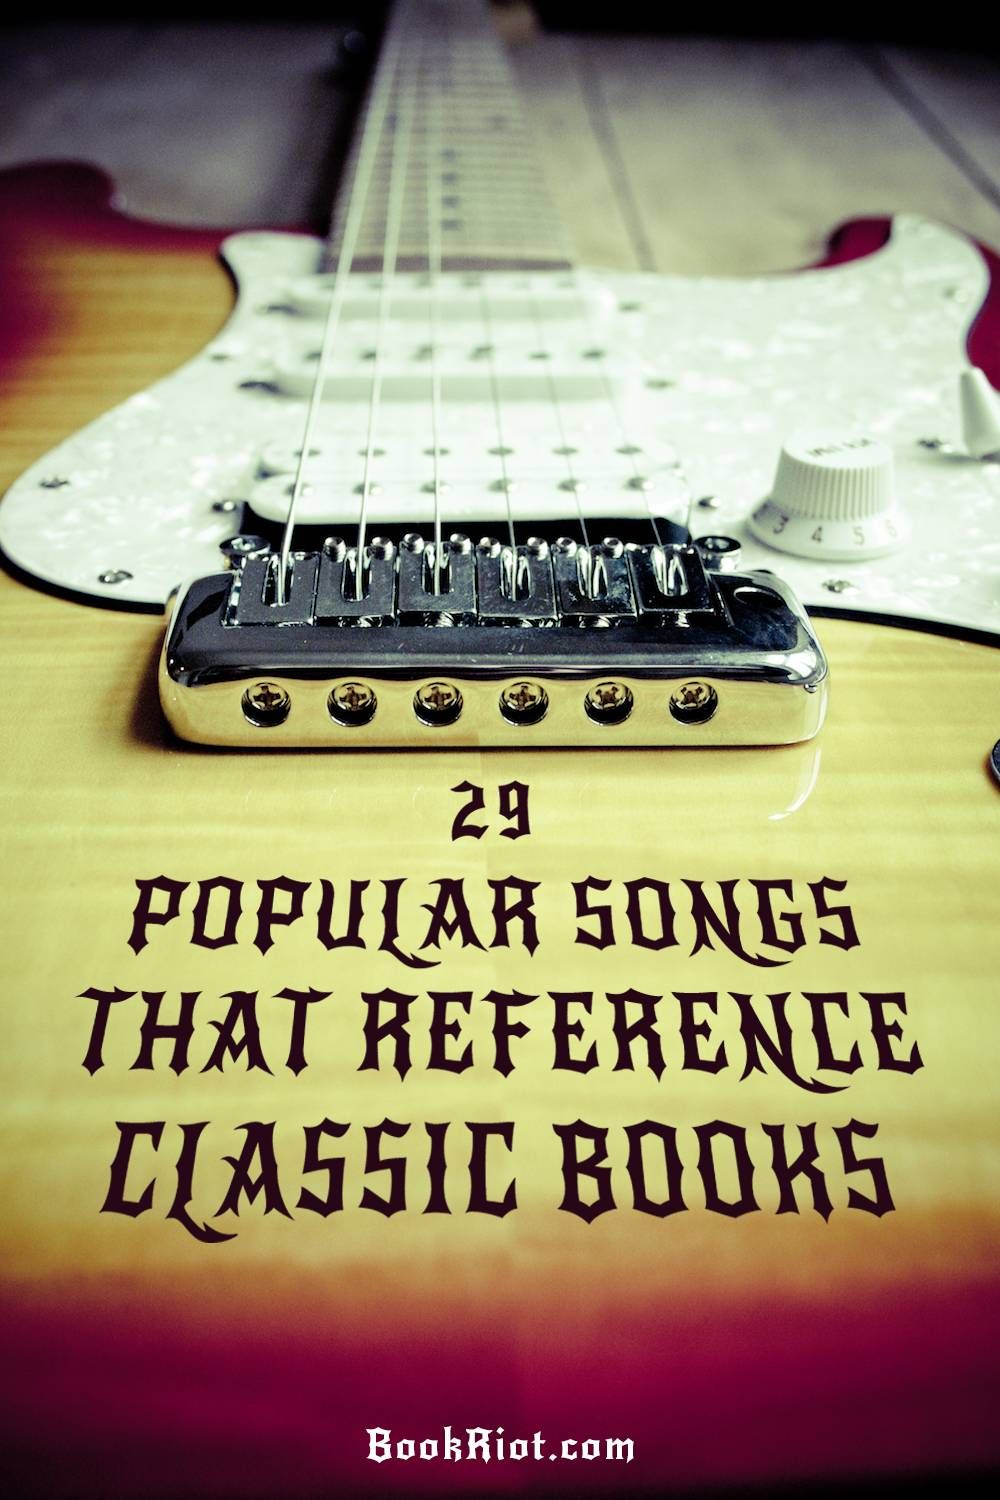 29 popular songs based on books - Metallica, Led Zeppelin, The Beatles, + more!